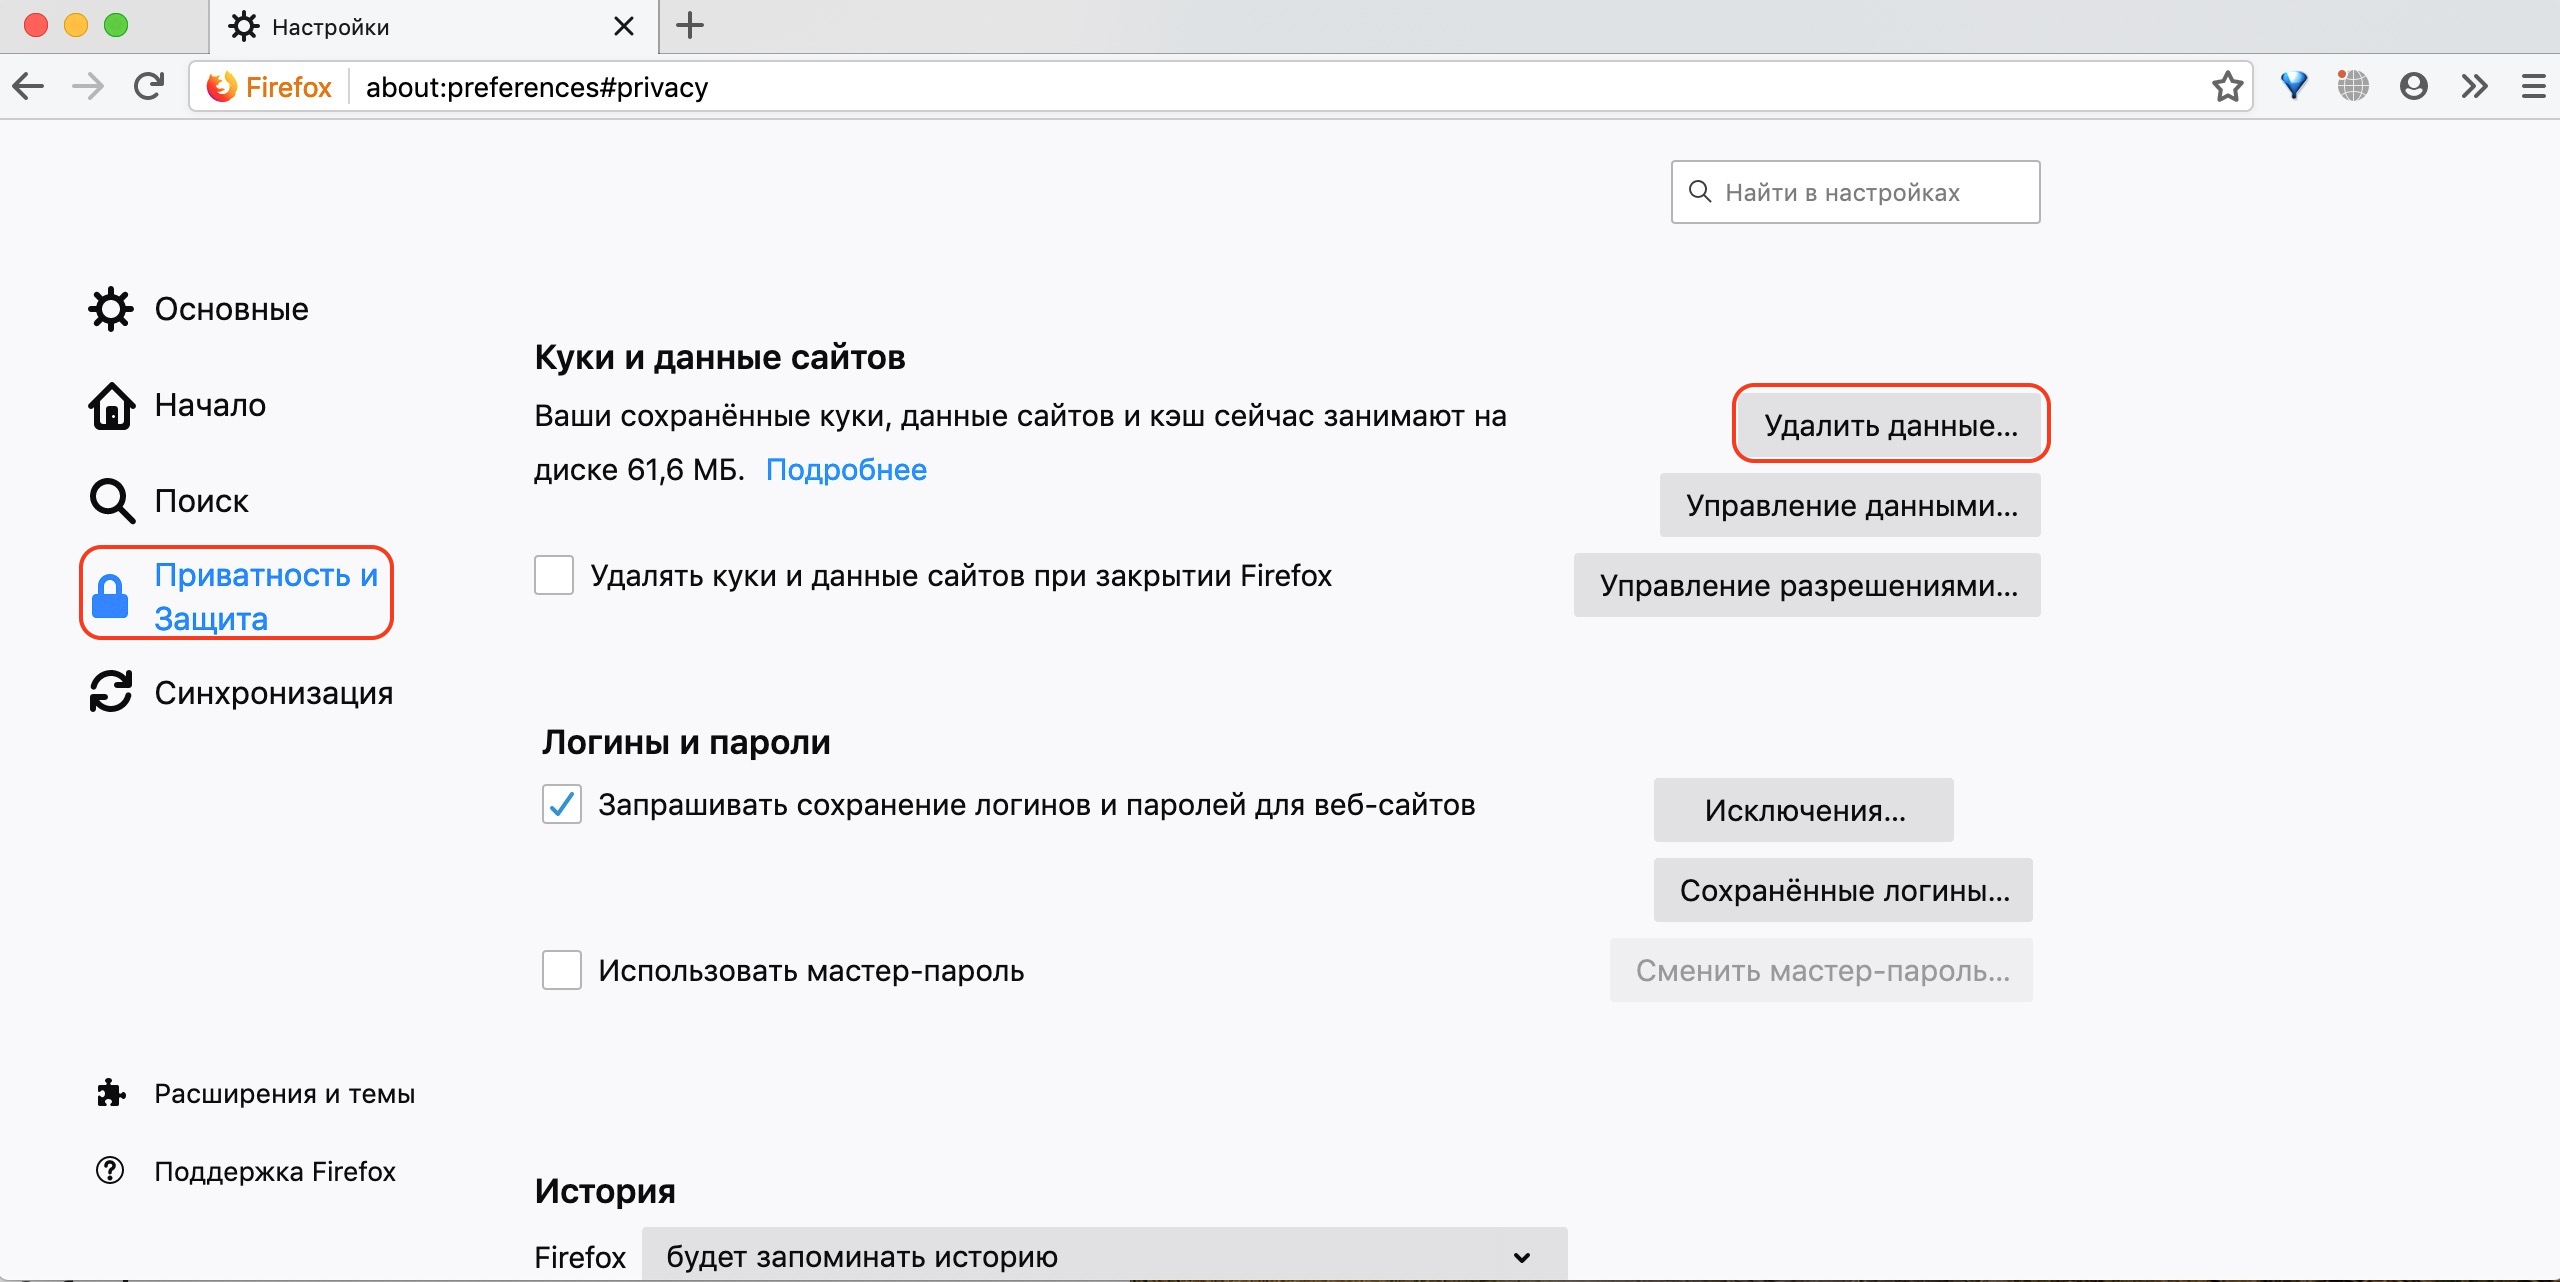 Как почистить кеш в браузере тор mega тор браузер скачать бесплатно на русском последняя версия андроид mega